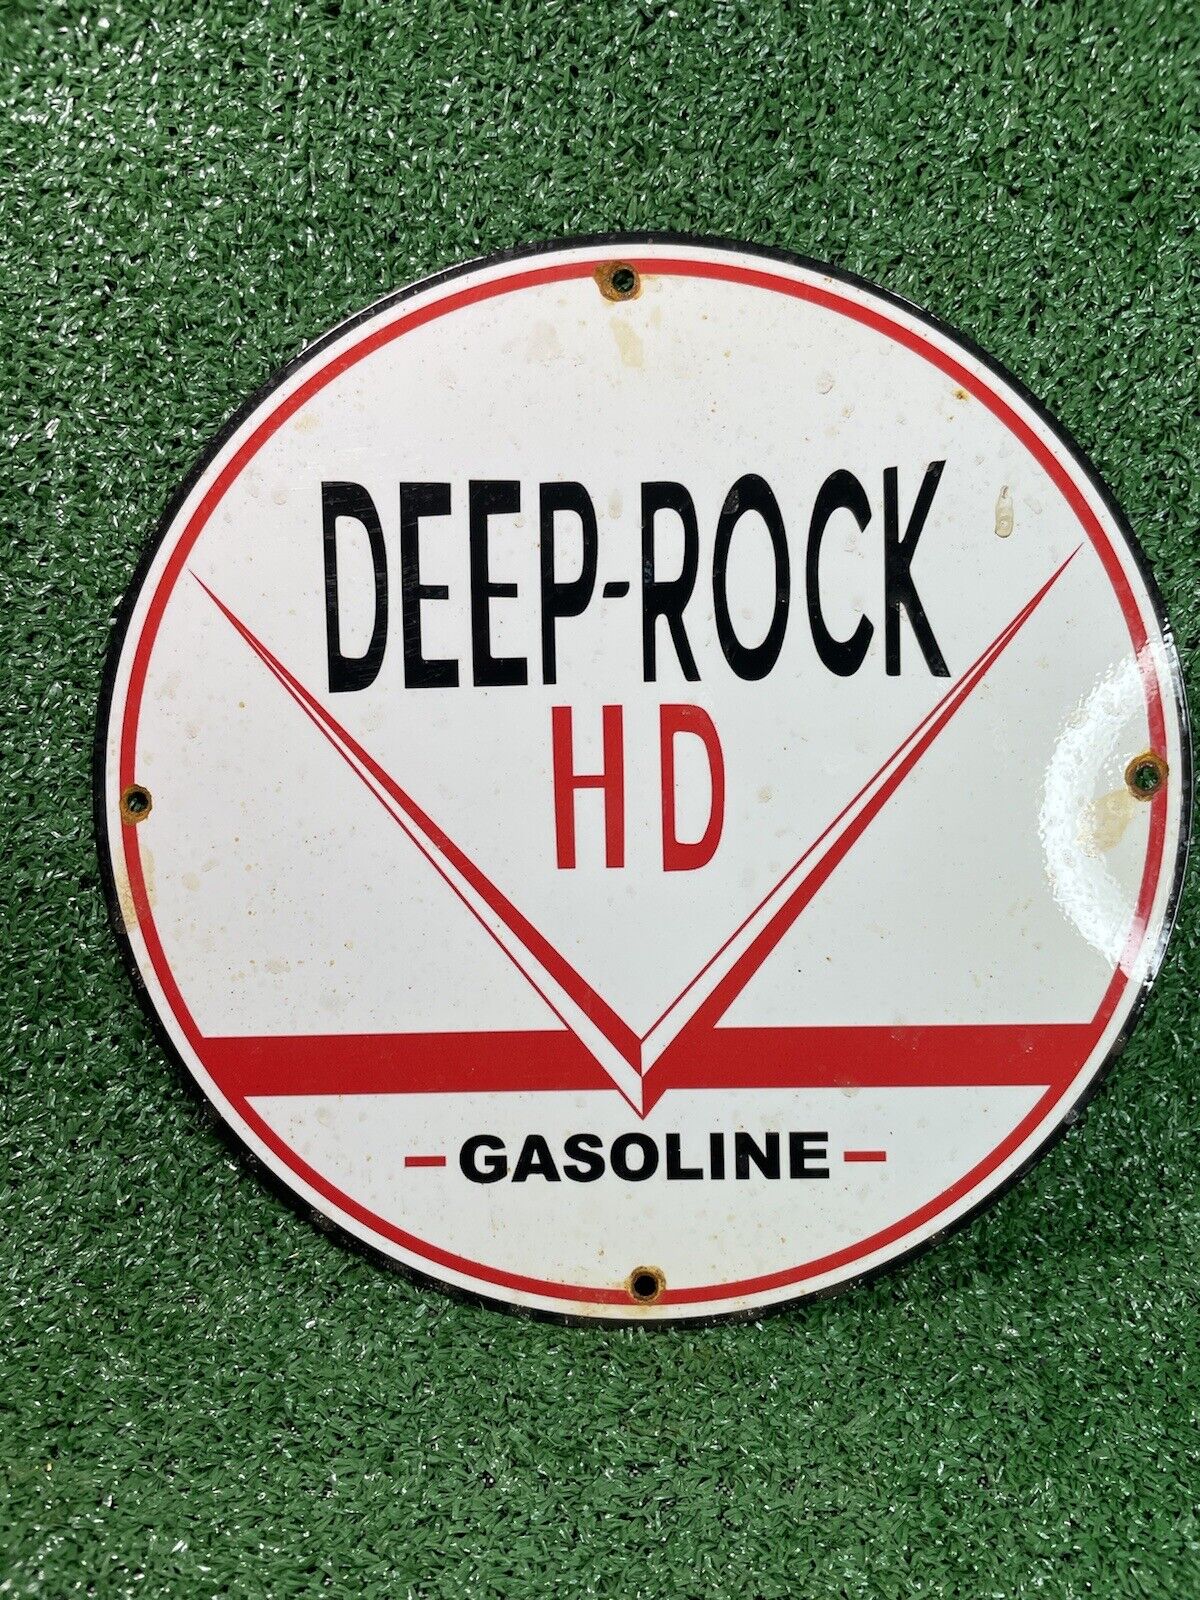 VINTAGE DEEP ROCK PORCELAIN SIGN HD GASOLINE GAS STATION ADVERTISING PUMP PLATE